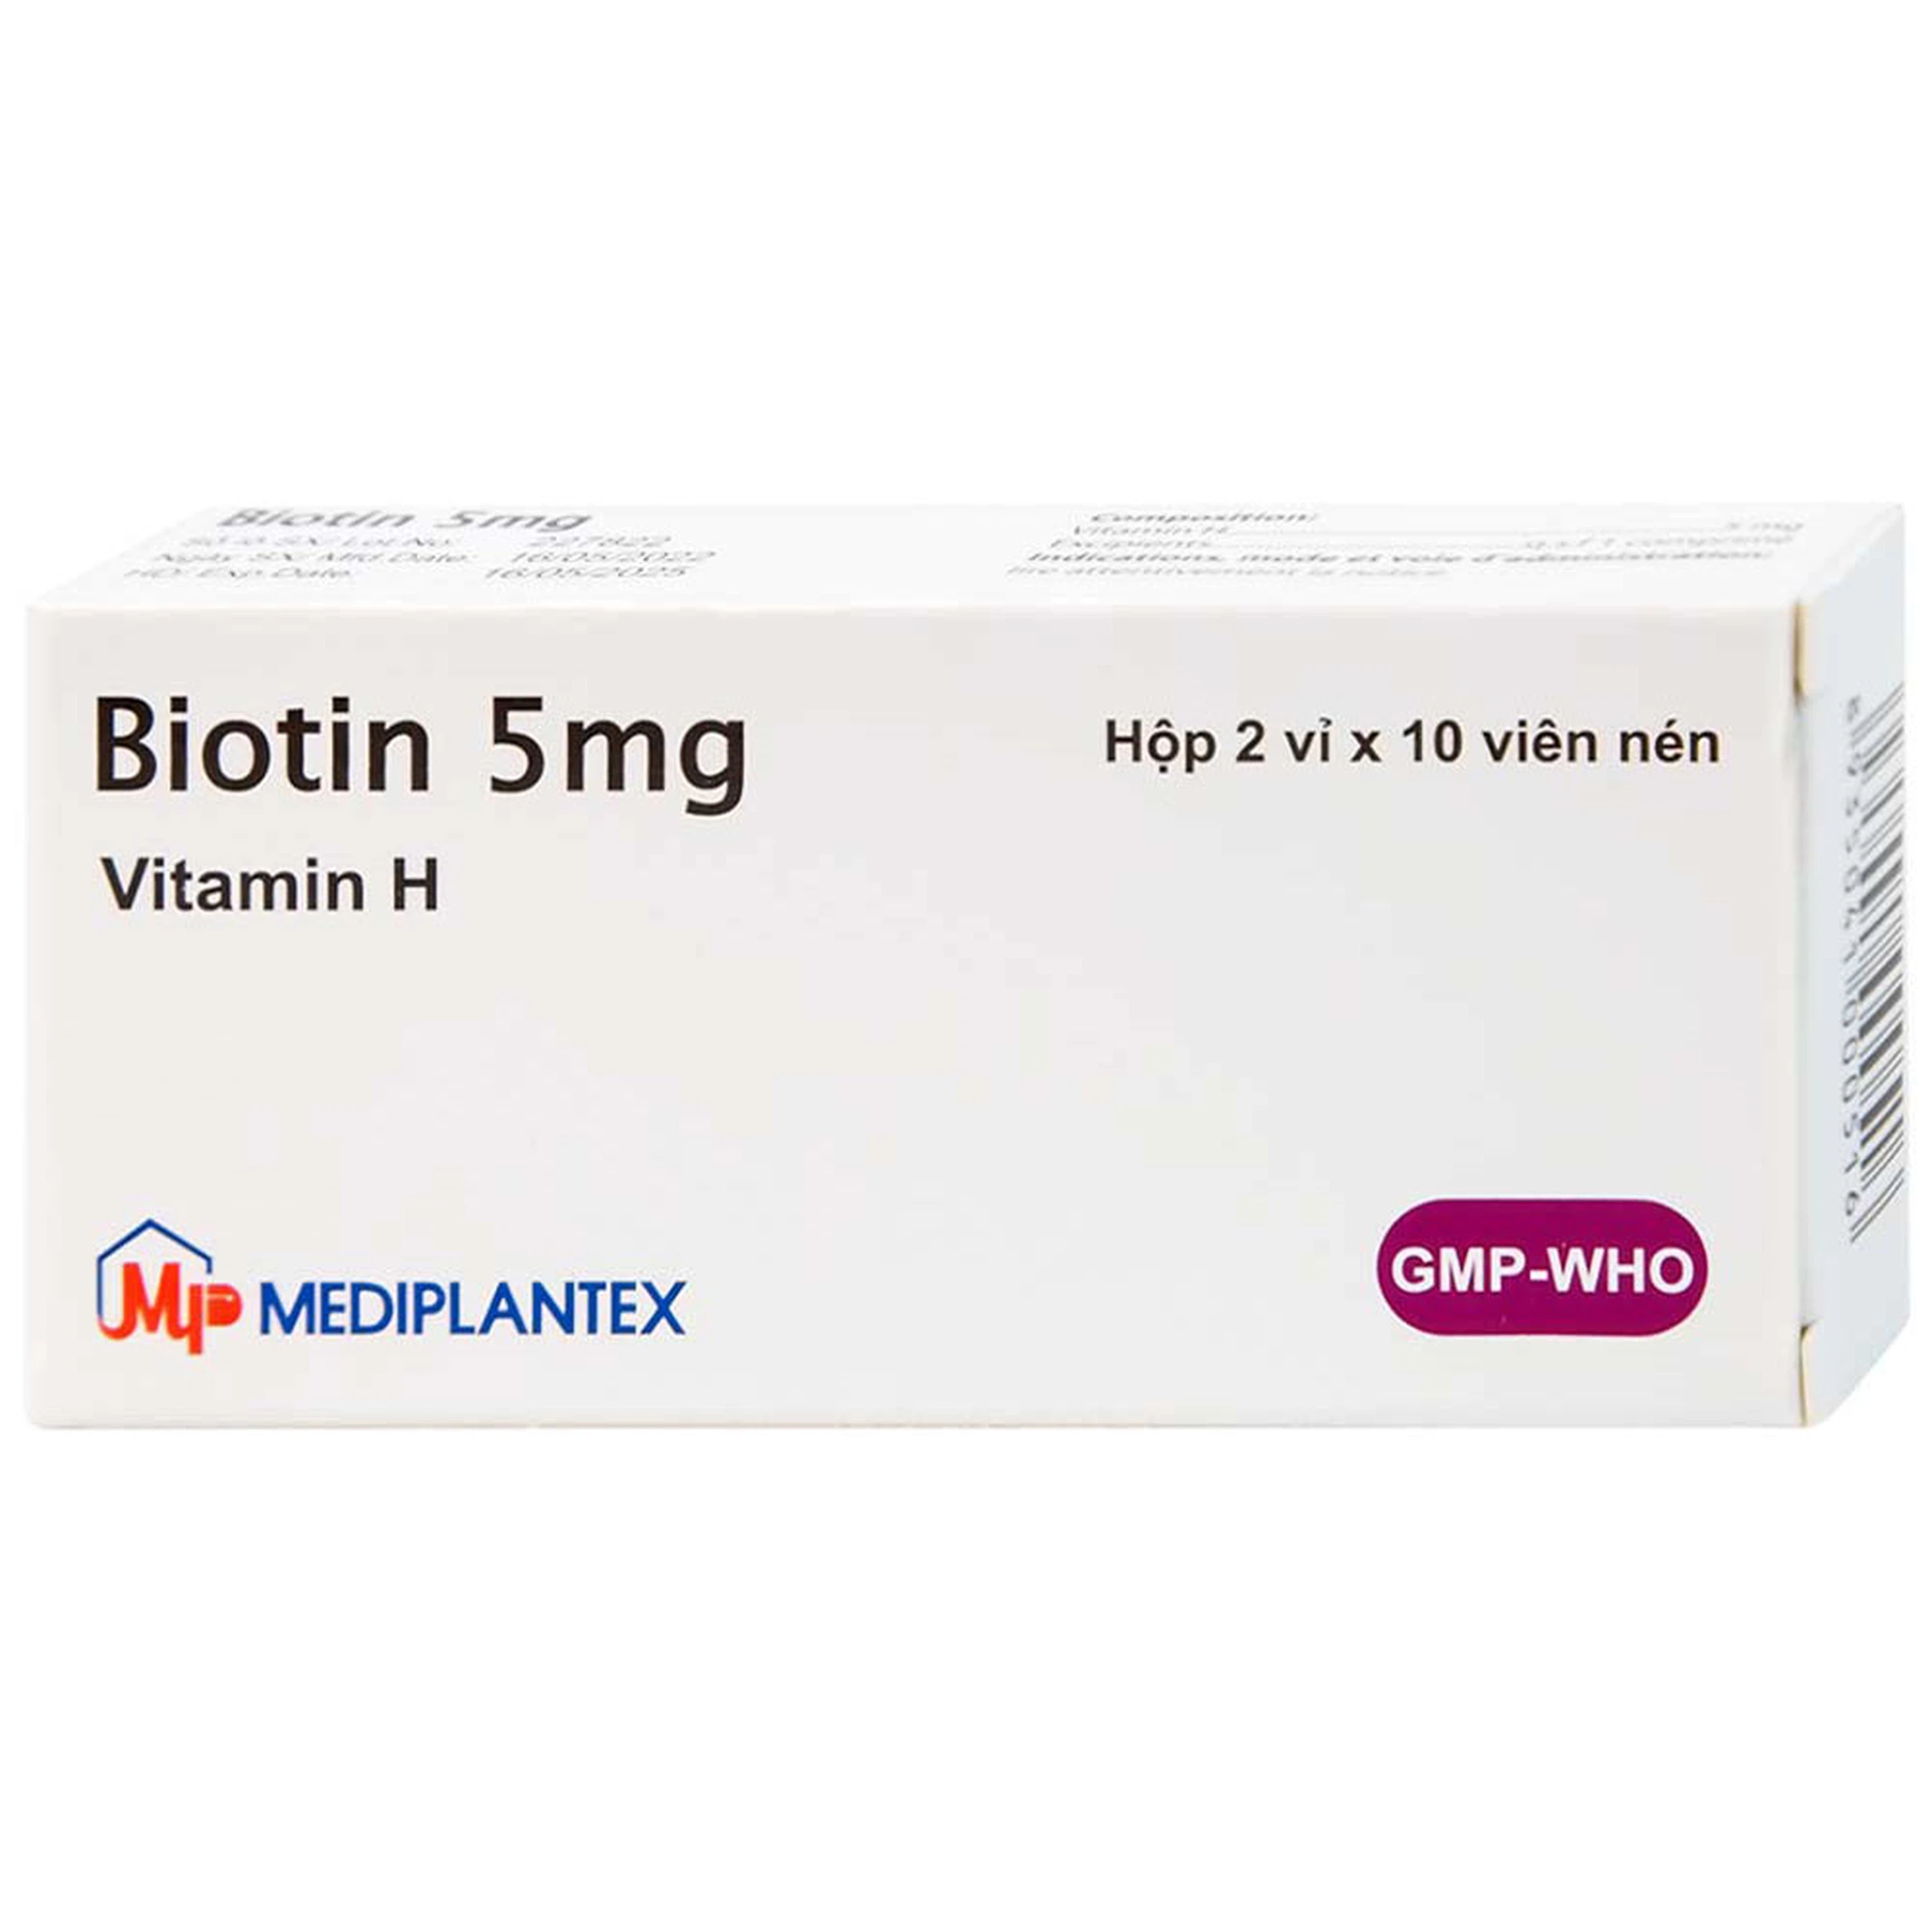 Thuốc Biotin 5mg Mediplantex điều trị thiếu hụt biotin (2 vỉ x 10 viên)